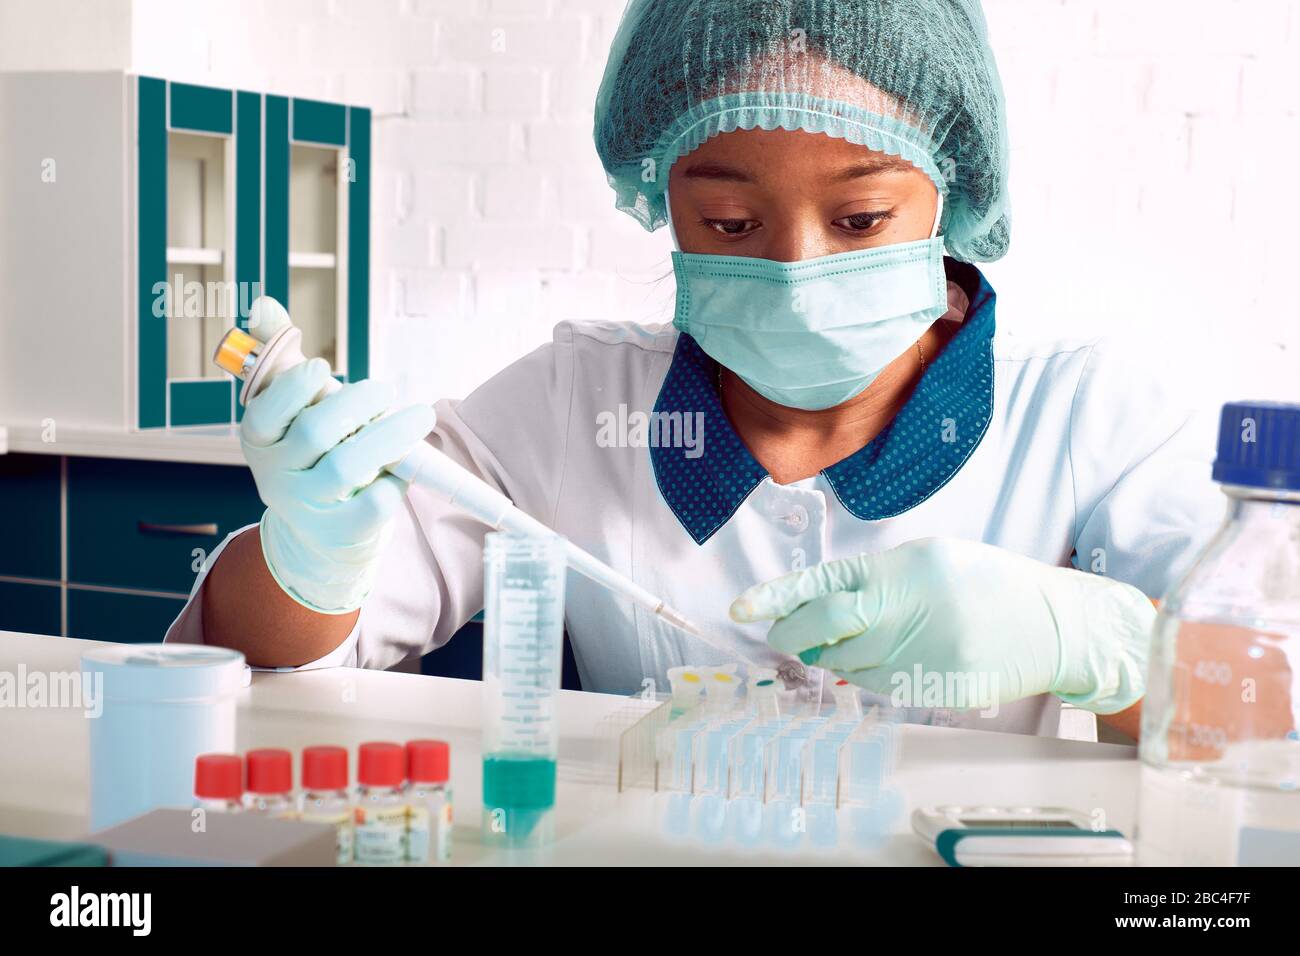 Test PCR pour coronavirus. La jeune femme africaine, scientifique ou médique en pelage blanc et chapeau, effectue un test des acides nucléiques pour détecter le SRAS-CoV-2 en pati Banque D'Images